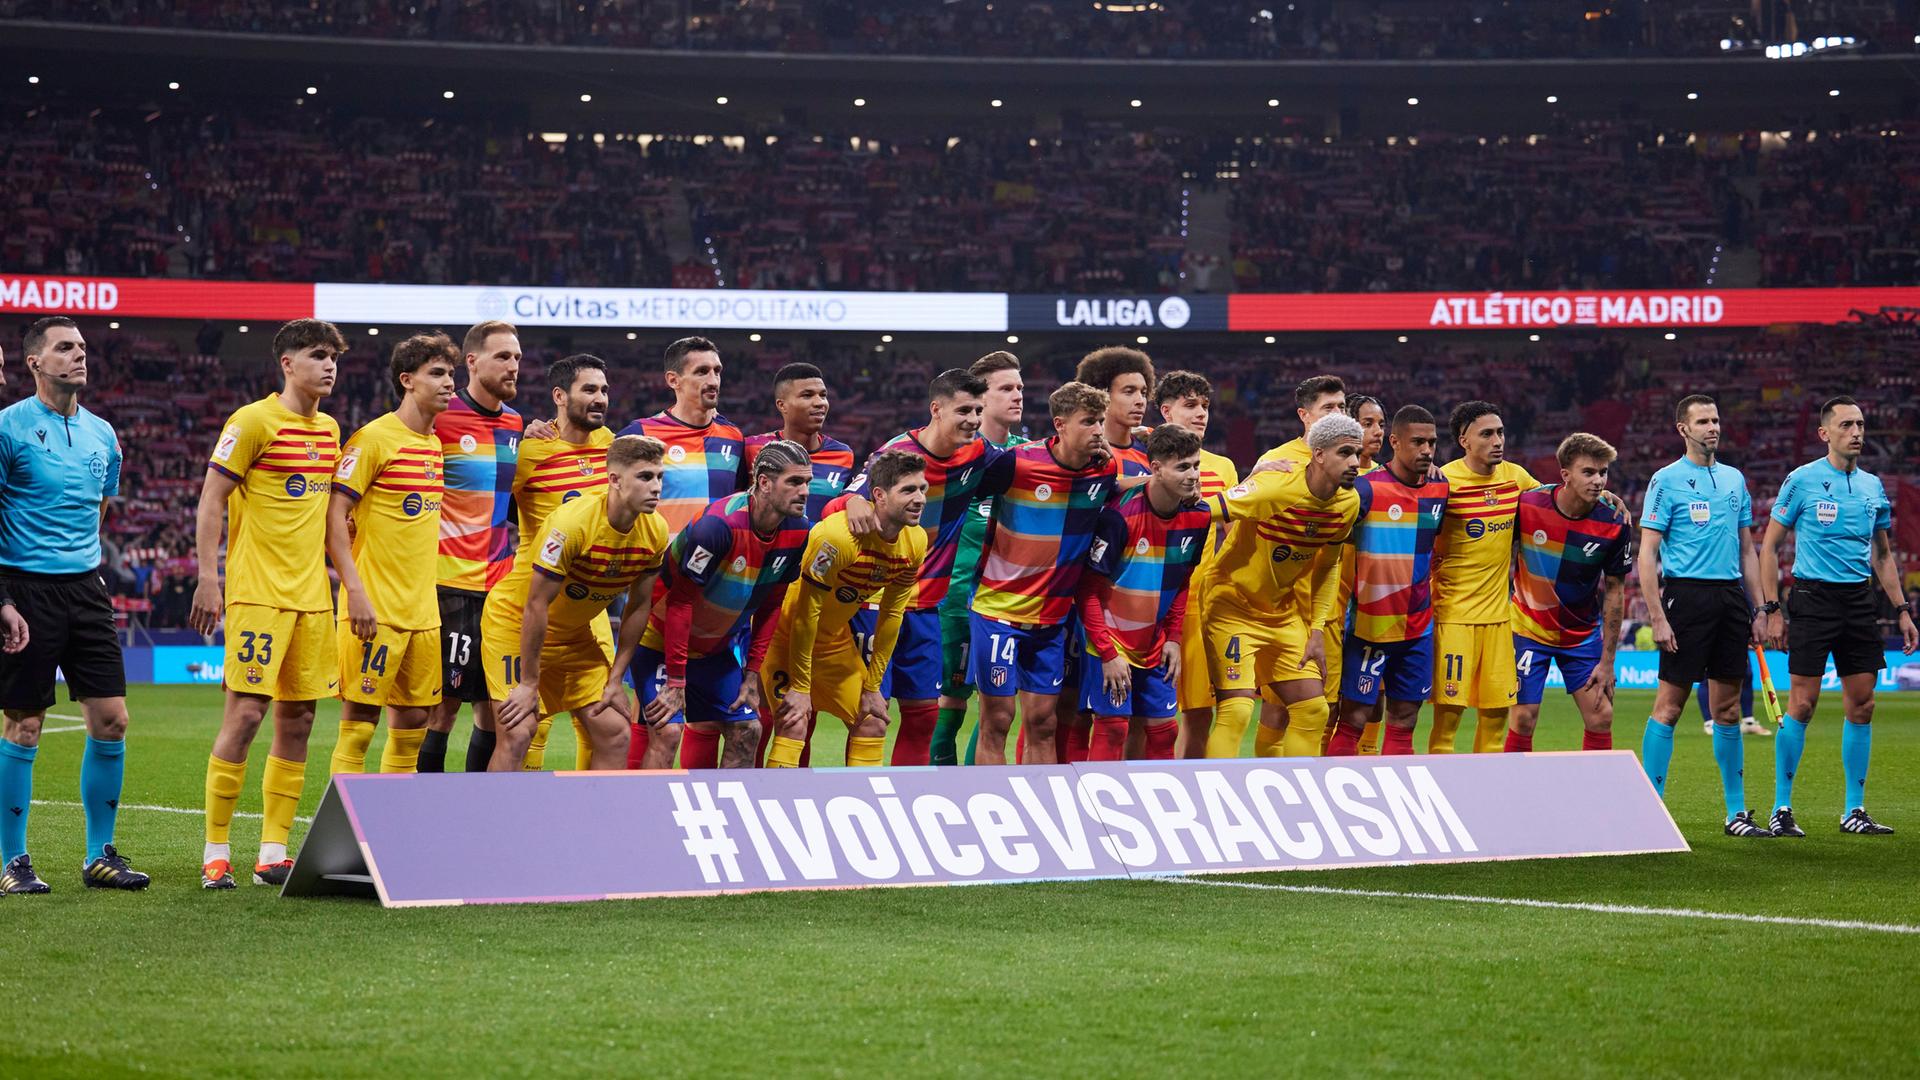 Facetas del problema del racismo en el fútbol español